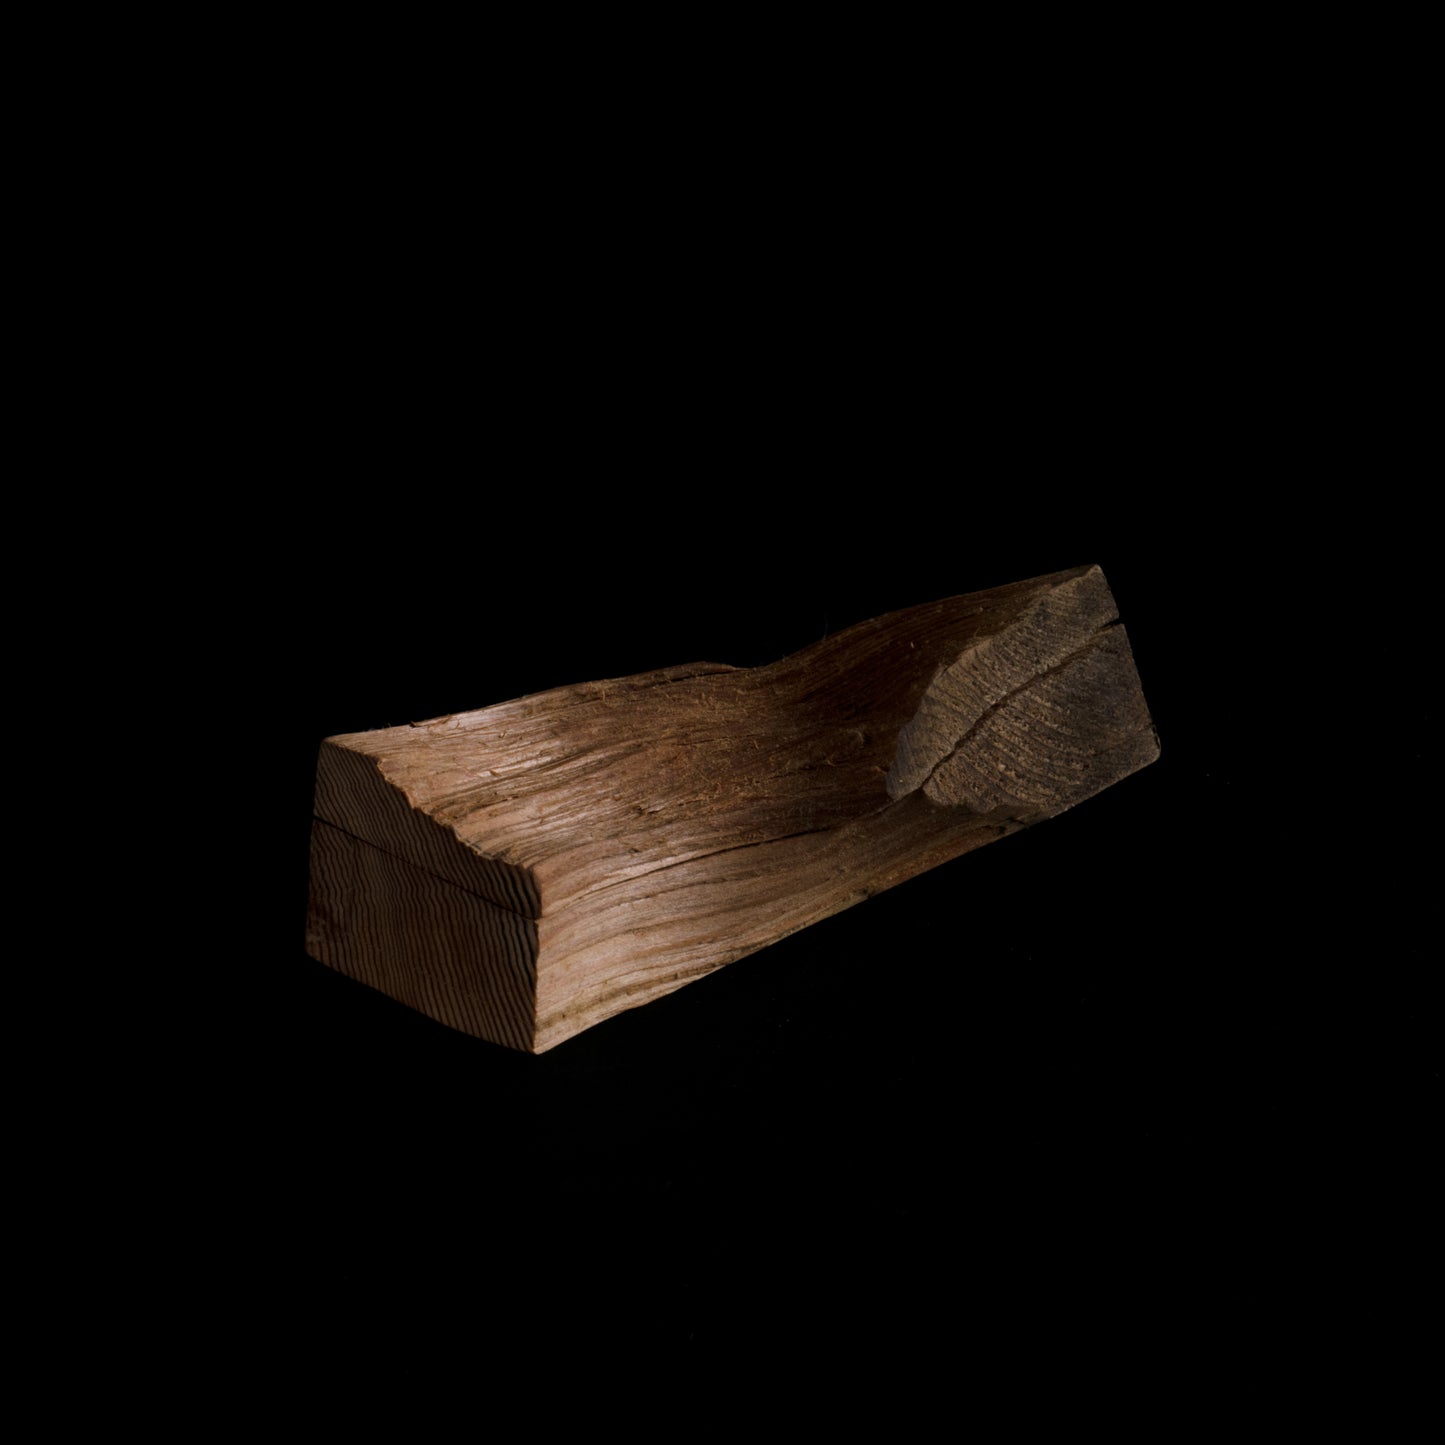 Abstract Cedar Box